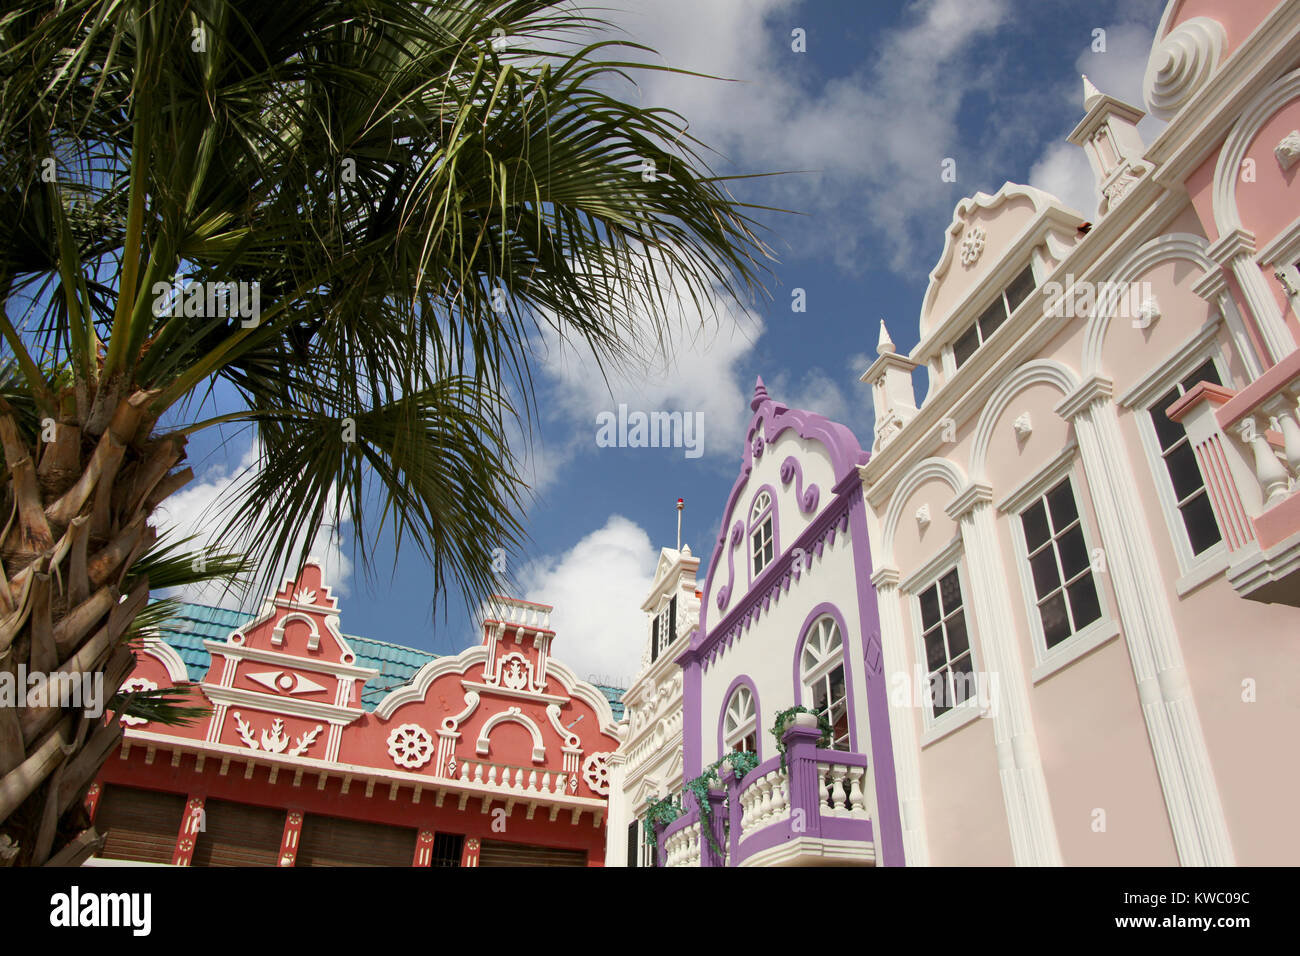 Rose, Violet typique & pastel rouge architecture peinte d'Aruba, Curaçao et Bonaire, des Caraïbes. Banque D'Images